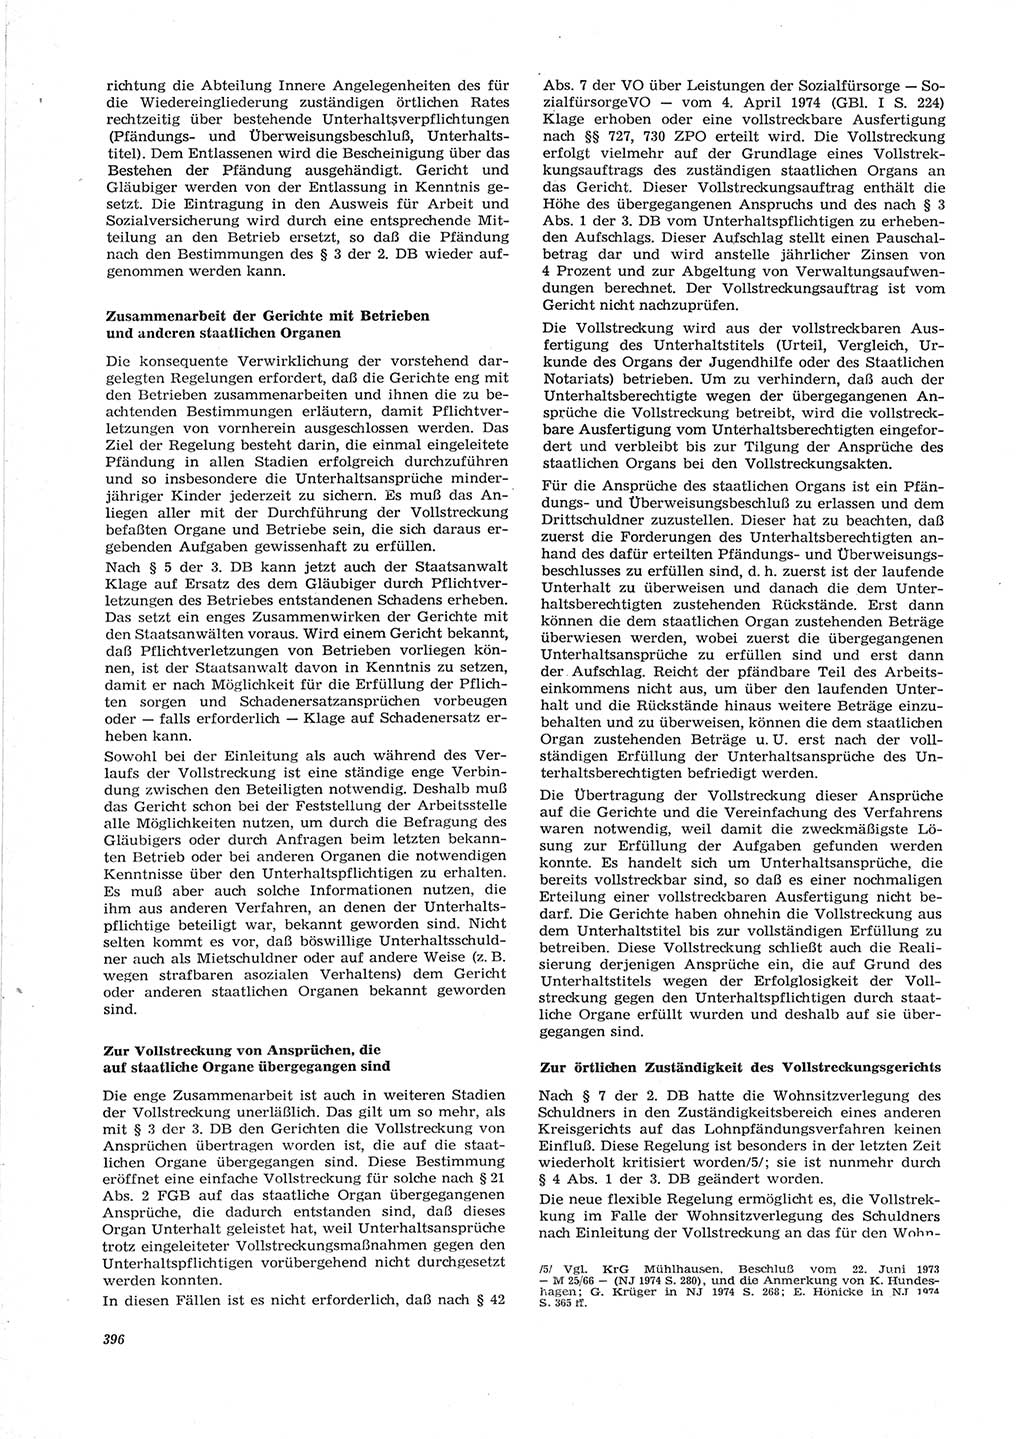 Neue Justiz (NJ), Zeitschrift für Recht und Rechtswissenschaft [Deutsche Demokratische Republik (DDR)], 28. Jahrgang 1974, Seite 396 (NJ DDR 1974, S. 396)